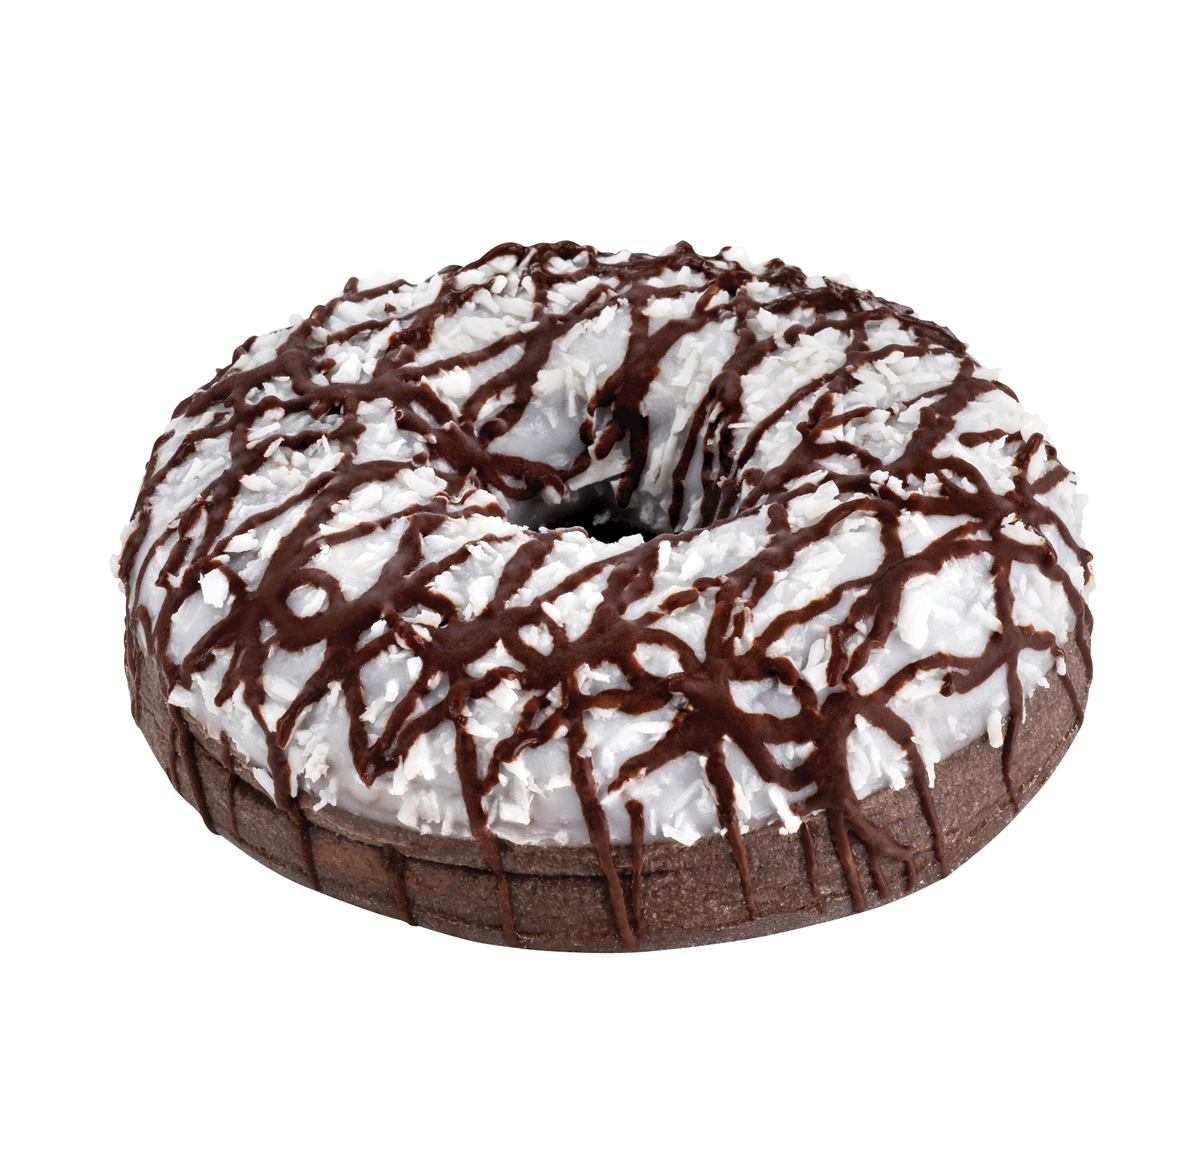 Black Label® Donut chocococonut